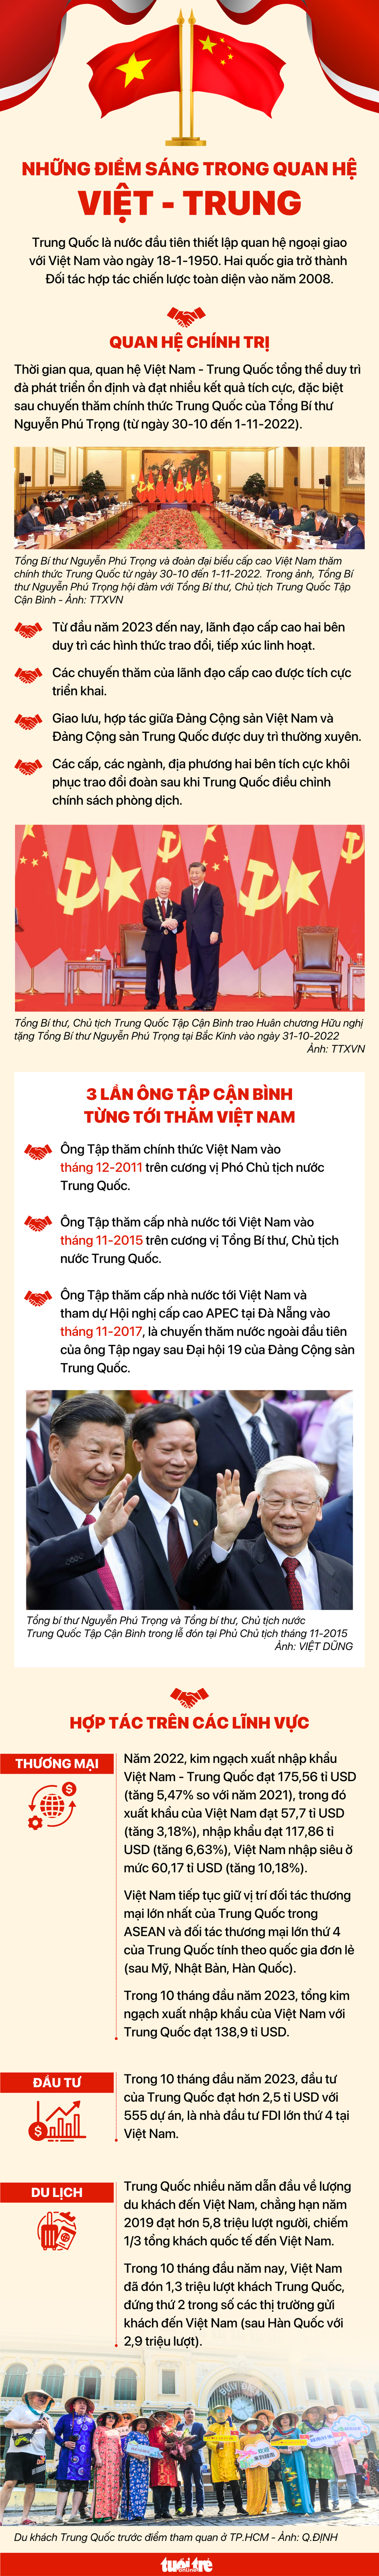 Hôm nay, ông Tập Cận Bình thăm cấp nhà nước Việt Nam- Ảnh 5.